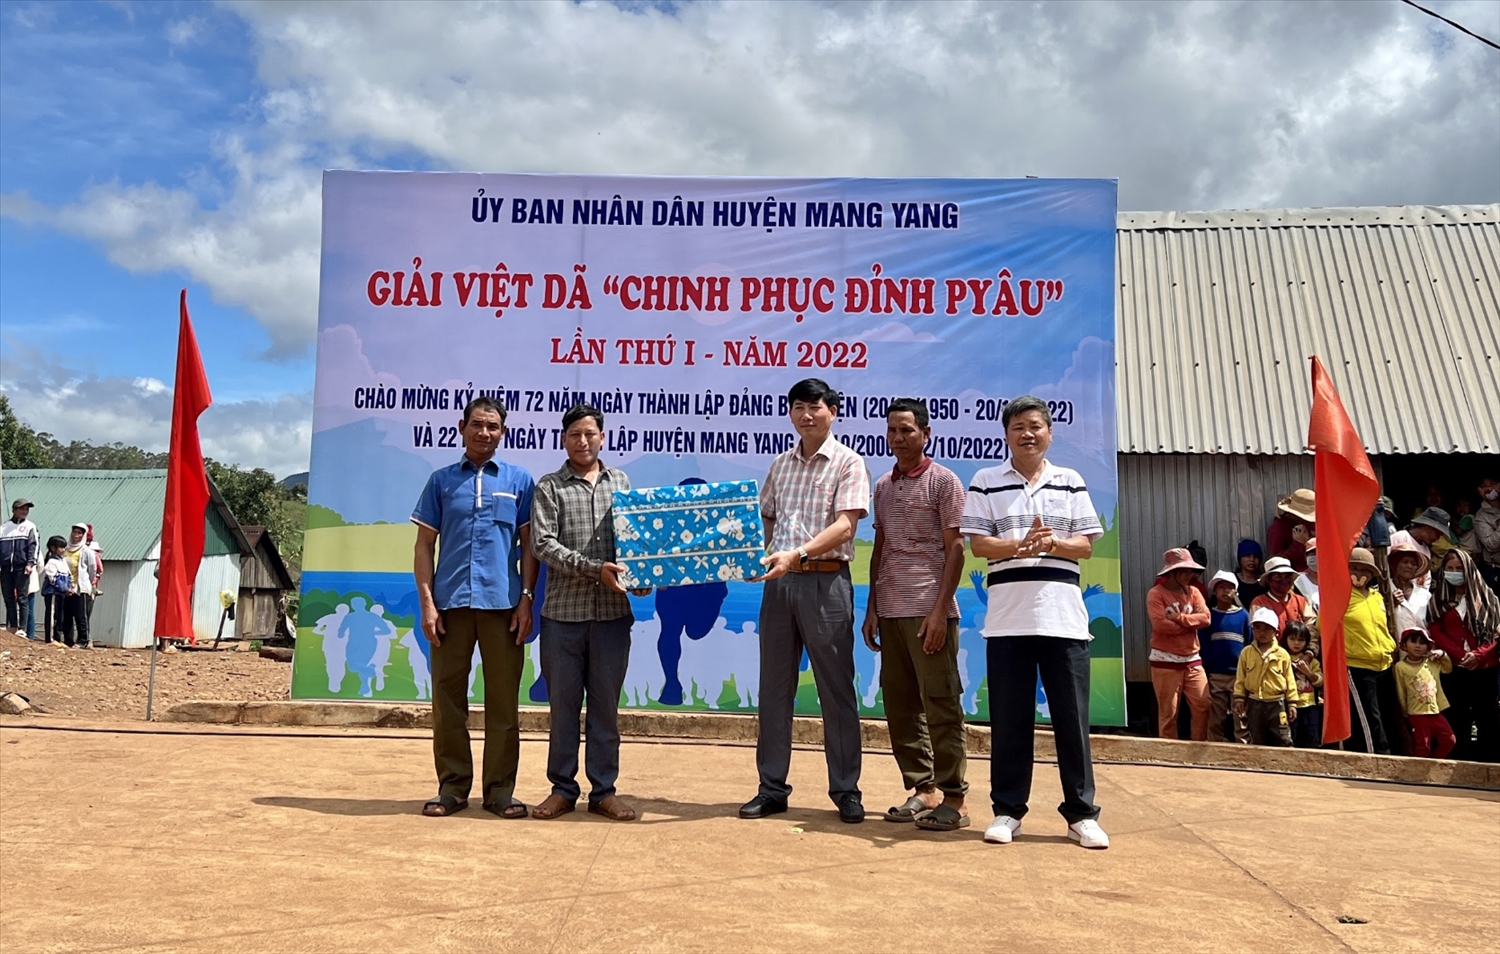 Huyện ủy, UBND huyện Mang Yang cùng một số cá nhân cũng đã có nhiều món quà ý nghĩa gửi tới hệ thống chính trị và người dân làng Pờ Yầu